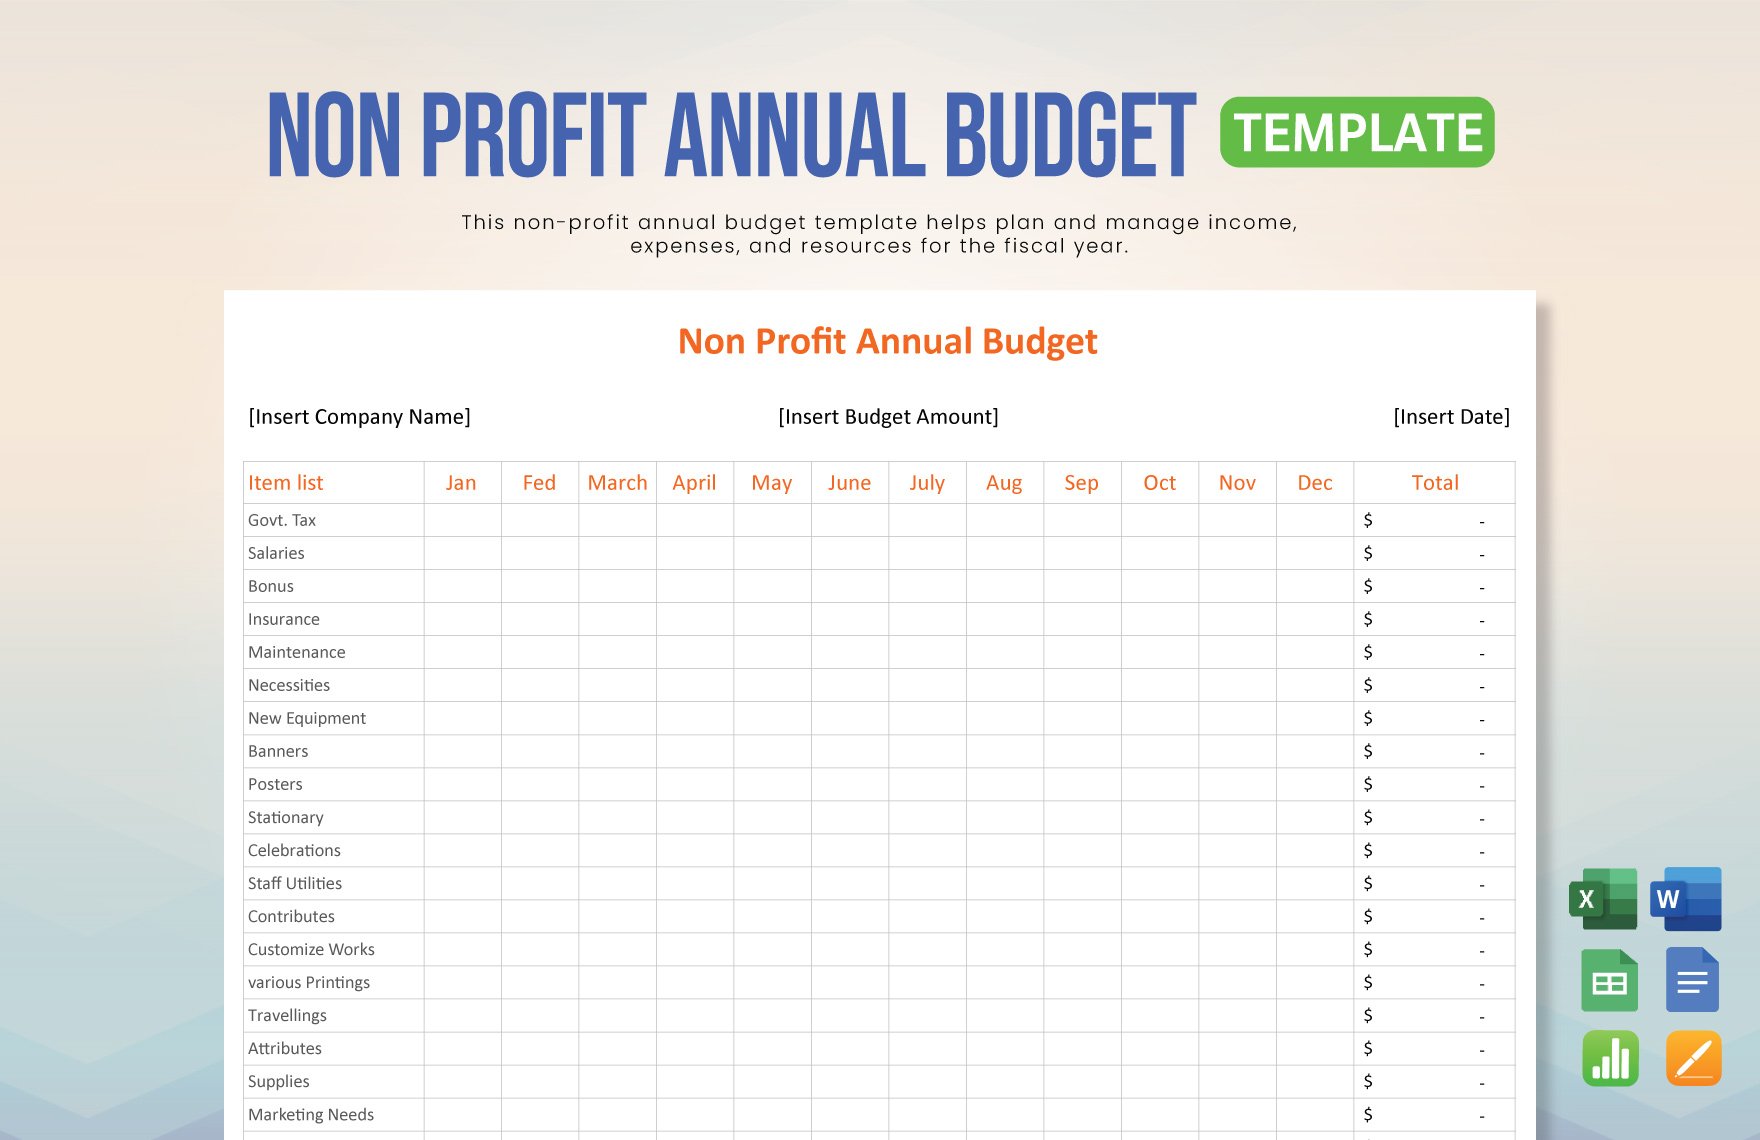 Non Profit Annual Budget Template